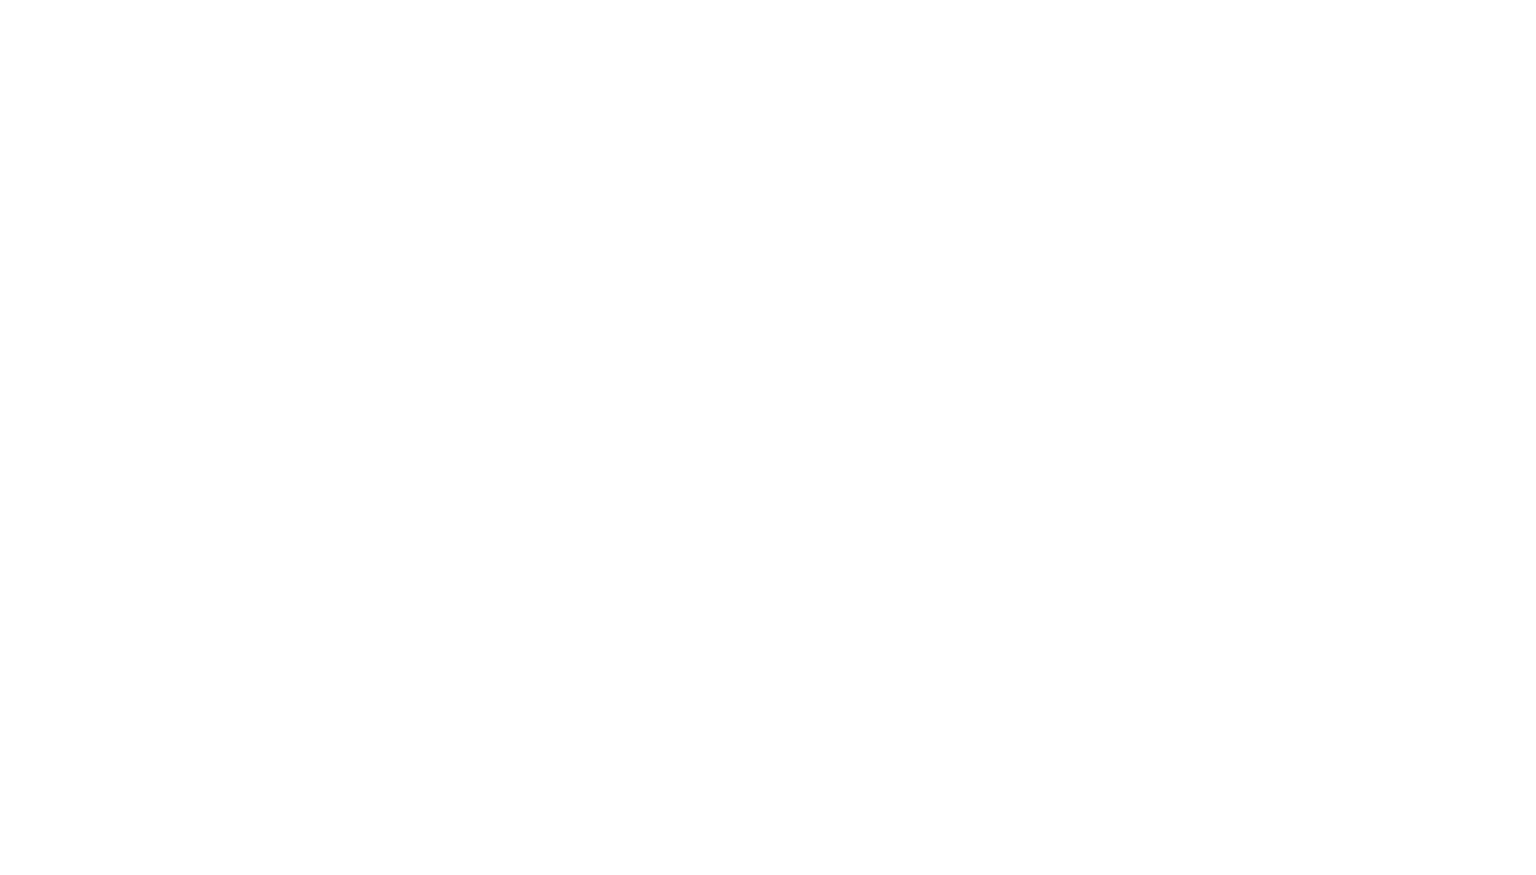 Red Eléctrica logo for dark backgrounds (transparent PNG)